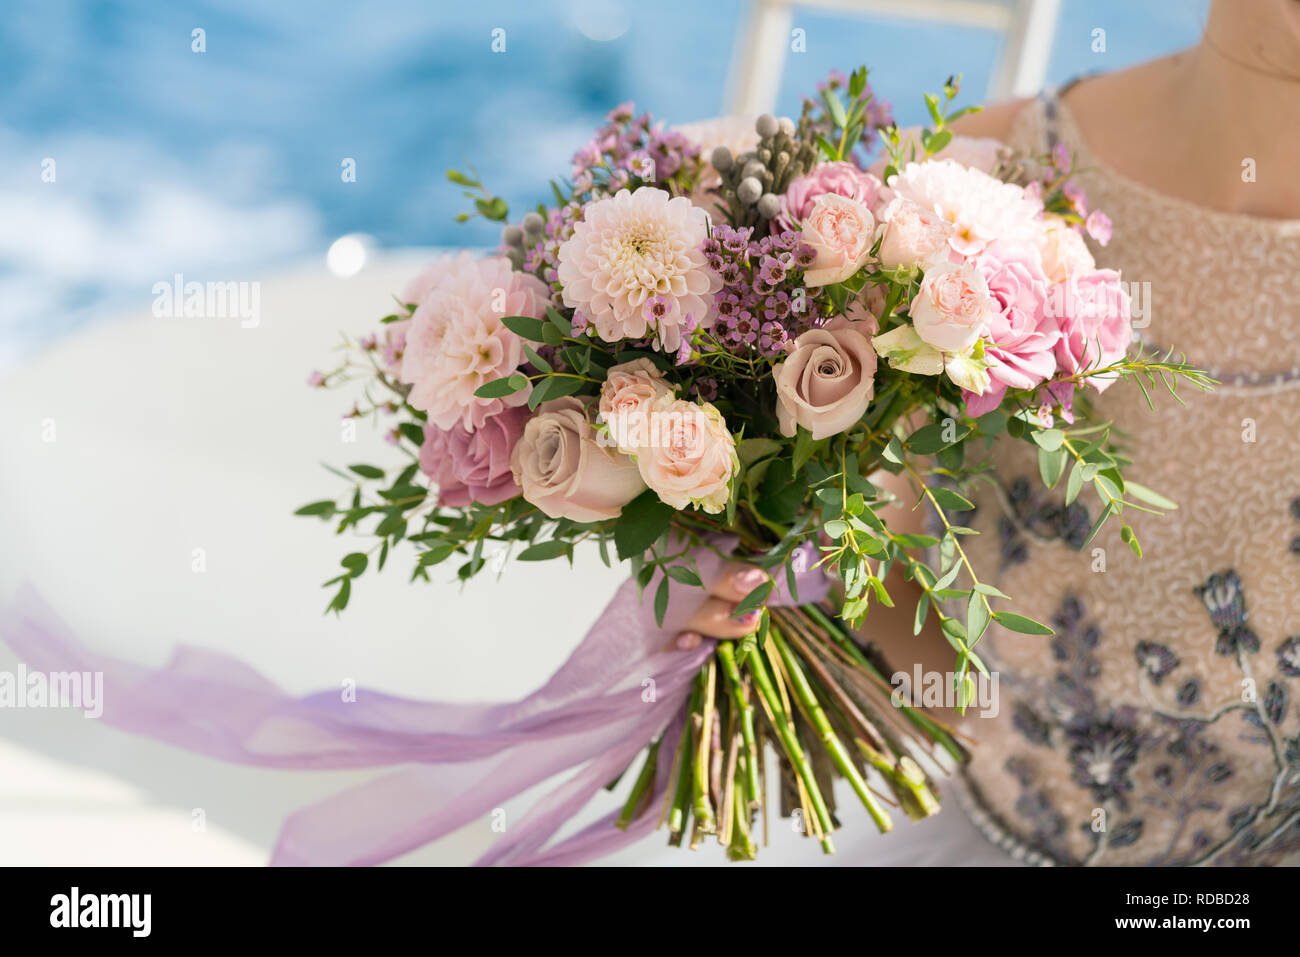 La sposa detiene una rosa e lilla Bouquet nozze nelle sue braccia contro lo sfondo del mare Foto Stock